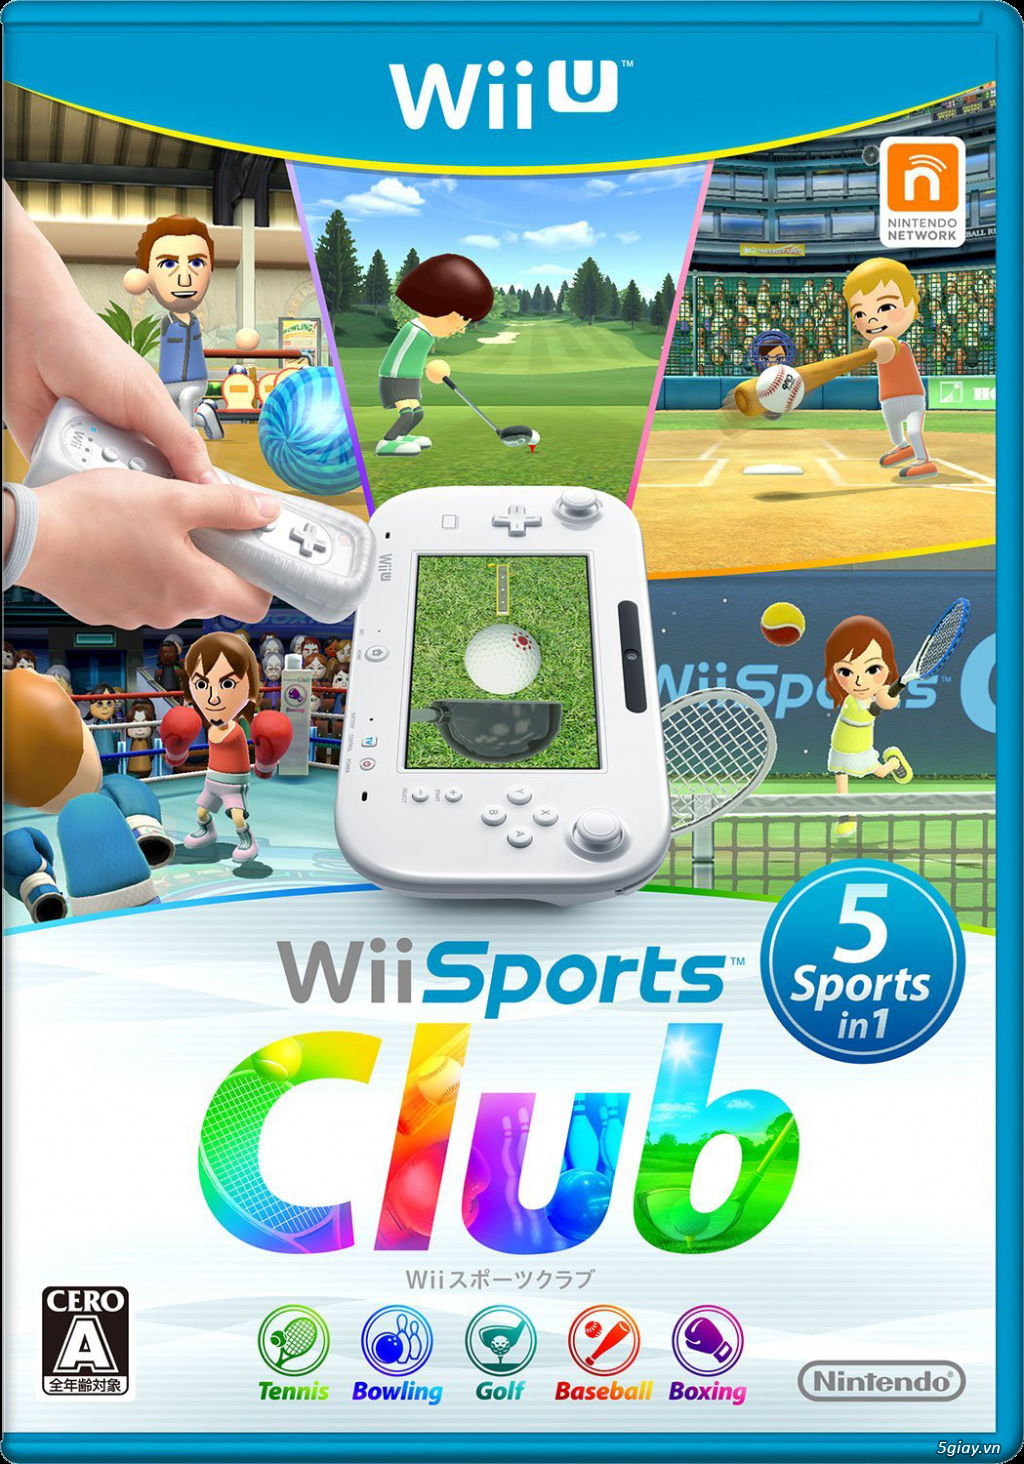 Nhận Jailbreak Wii U và chép game Wii U